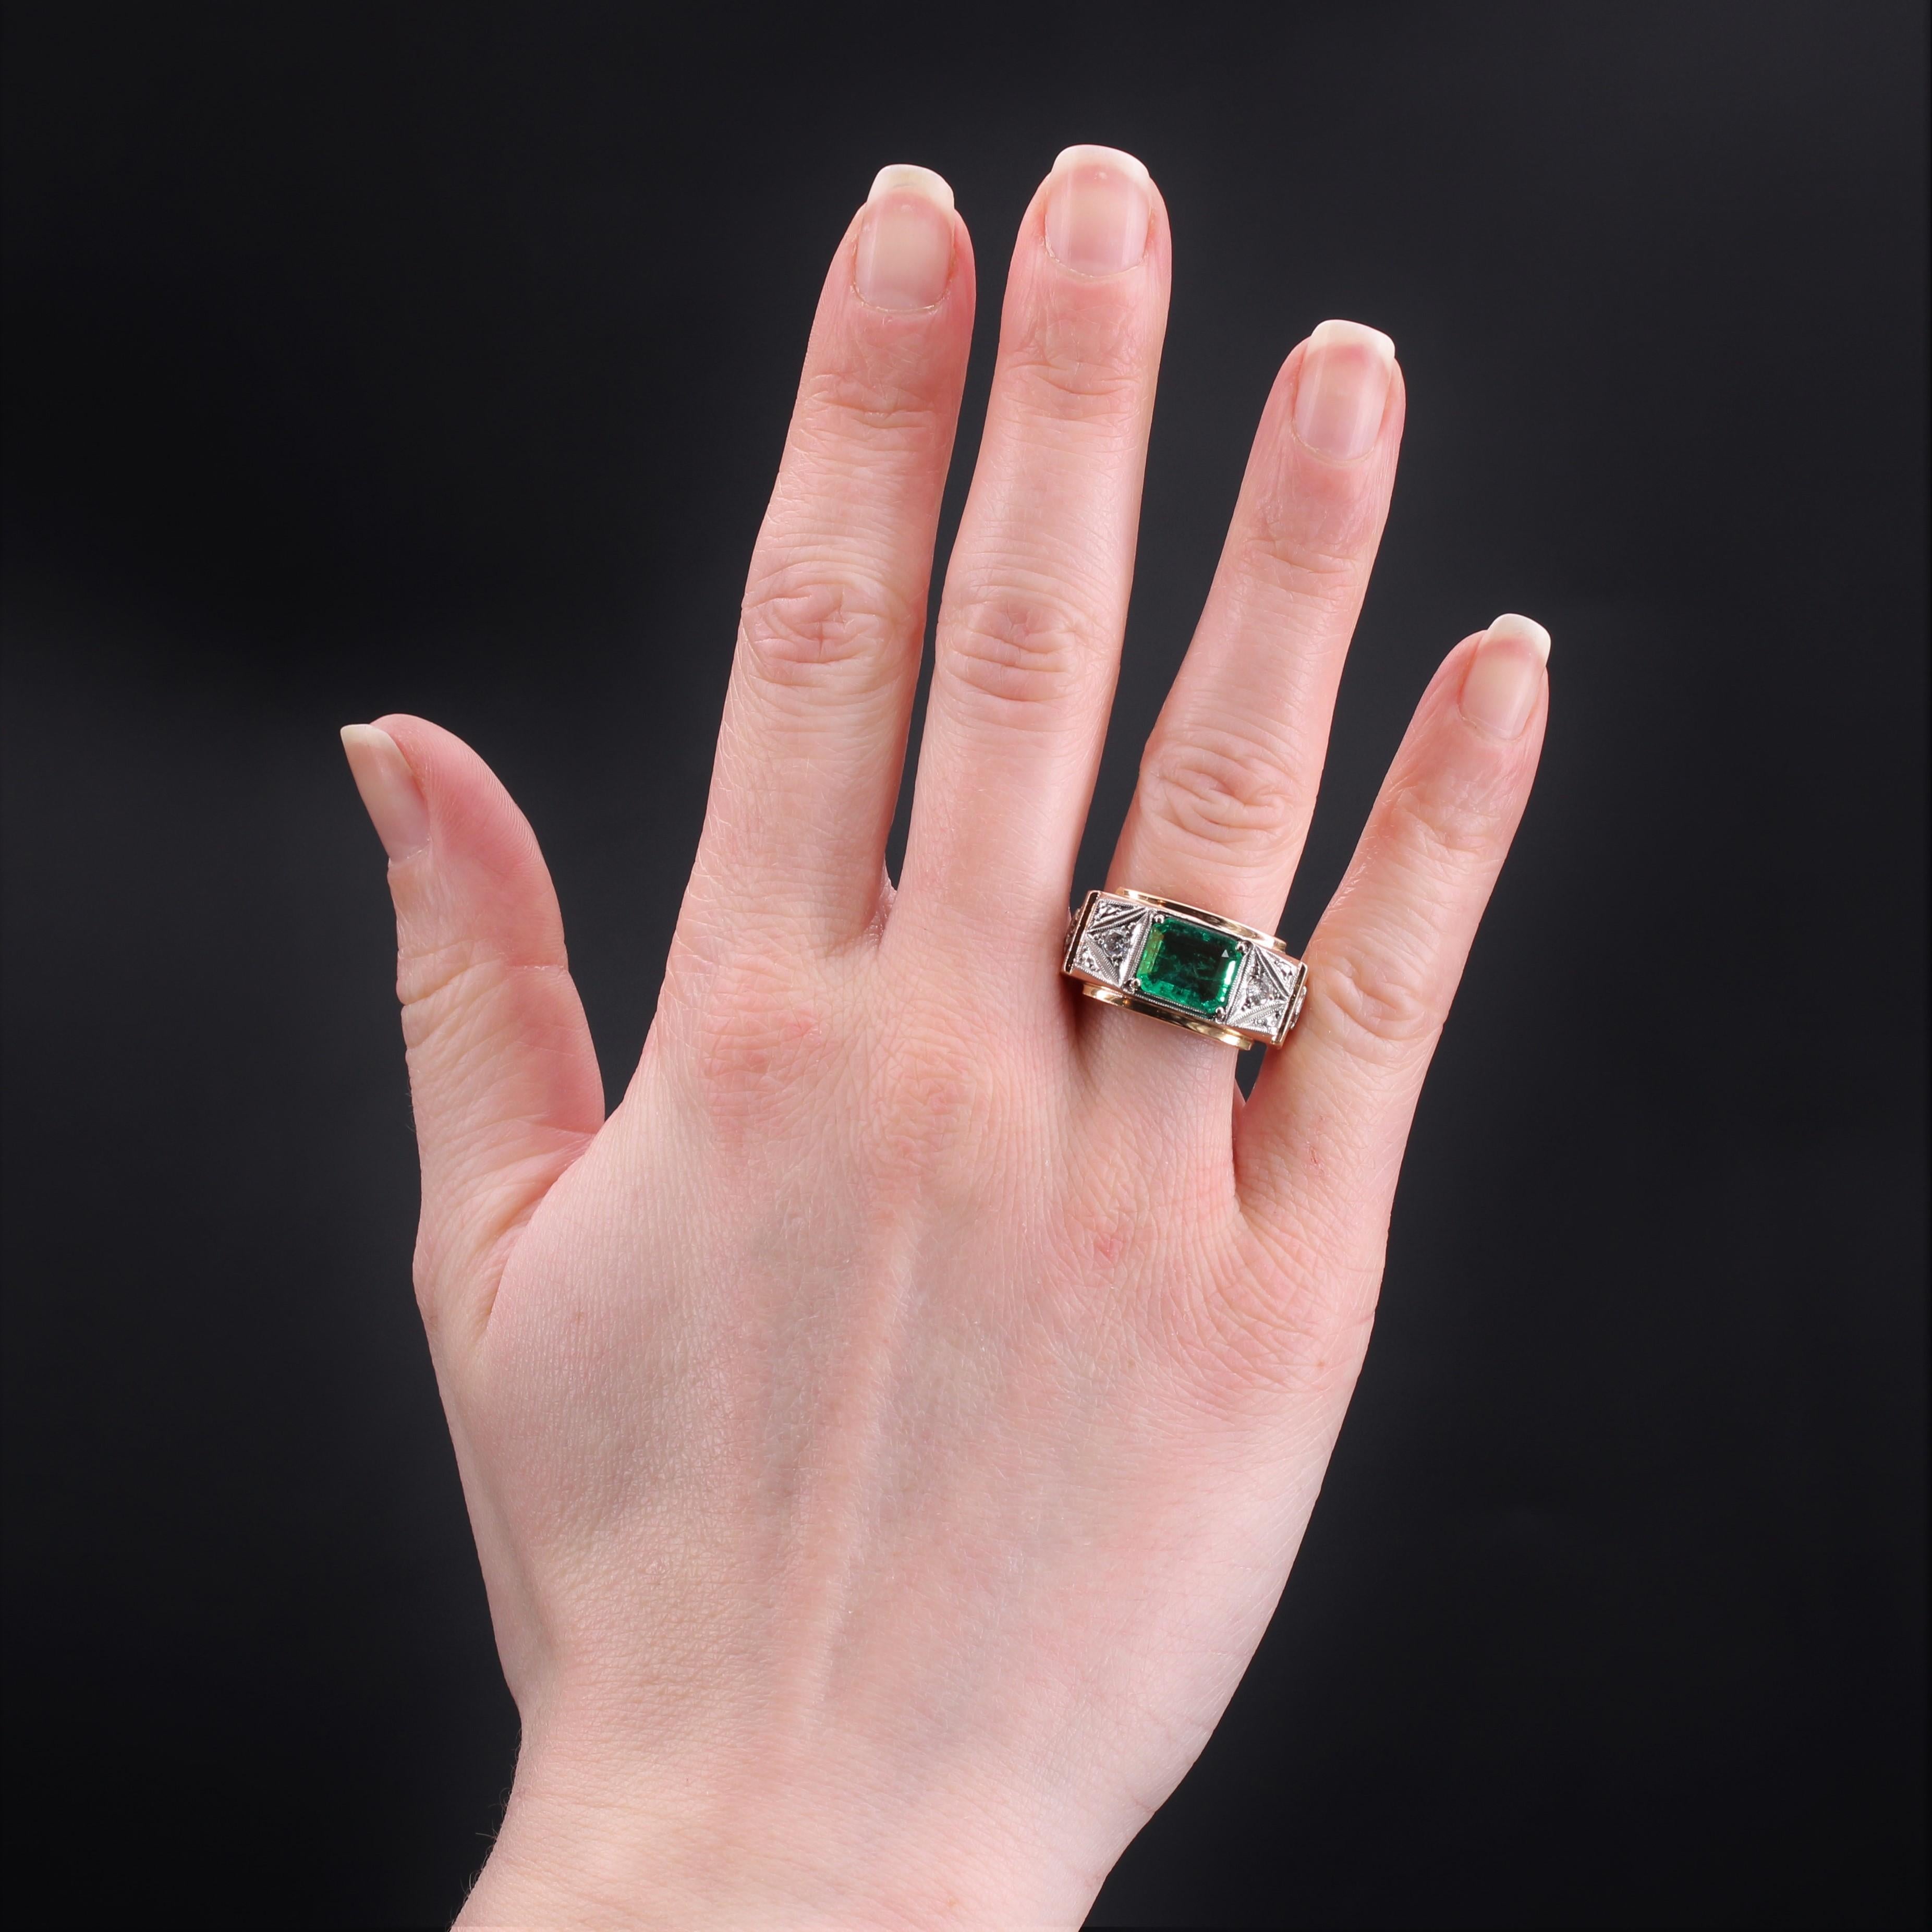 Ring aus 18 Karat Roségold, Punzierung Eule und Platin, Punzierung Mascaron.
Erhabener Ring mit geometrischen Linien, auf der Oberseite mit einem Smaragd besetzt, der in 4 Klauen gehalten wird, die auf beiden Seiten eines gemeißelten